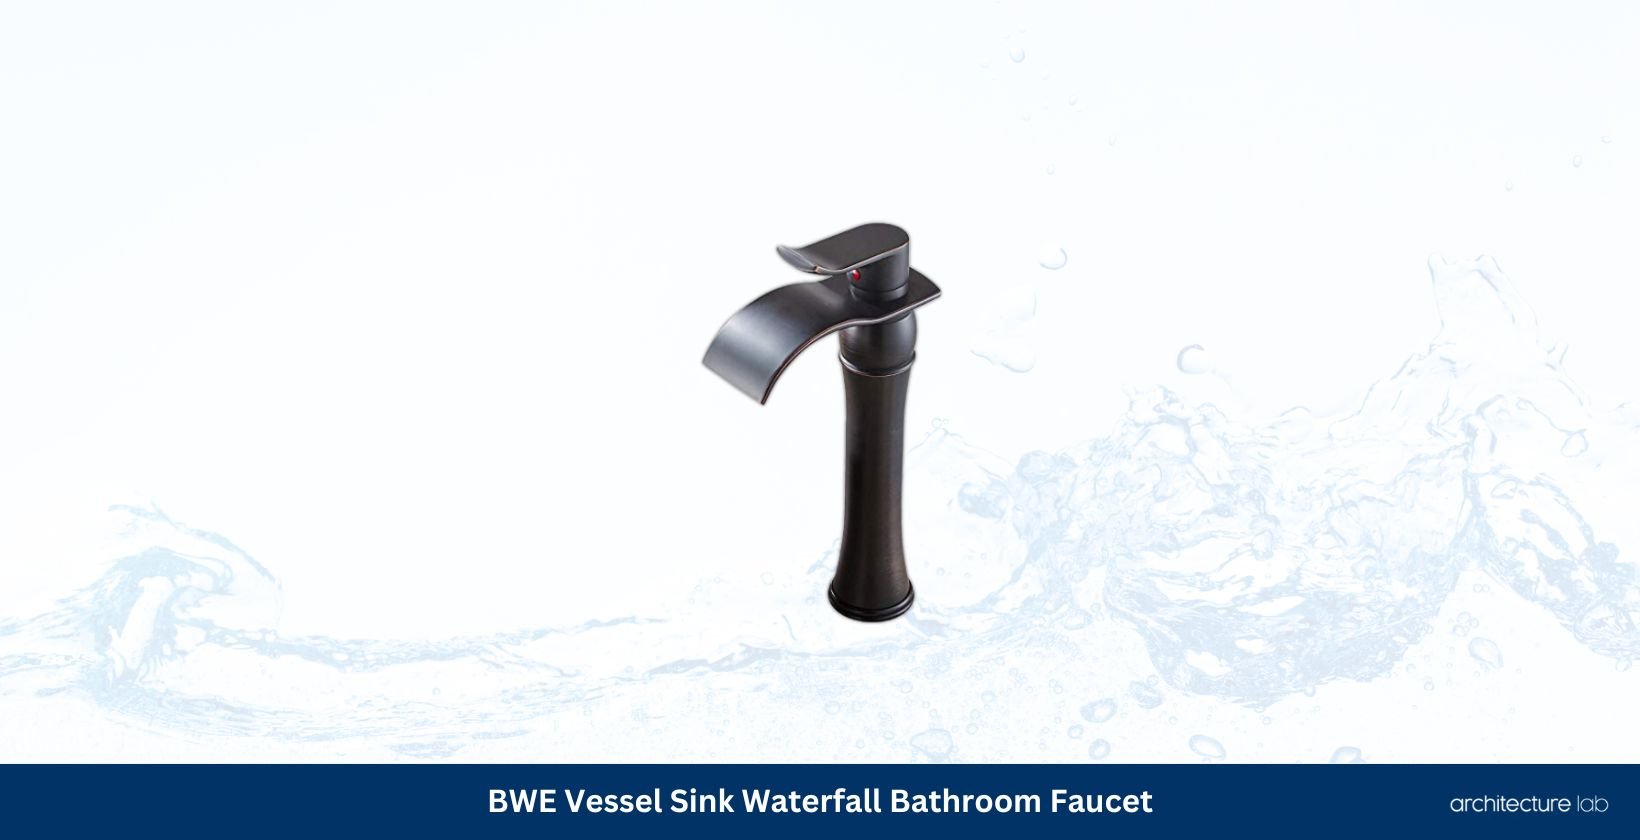 Bwe vessel sink waterfall bathroom faucet 6090